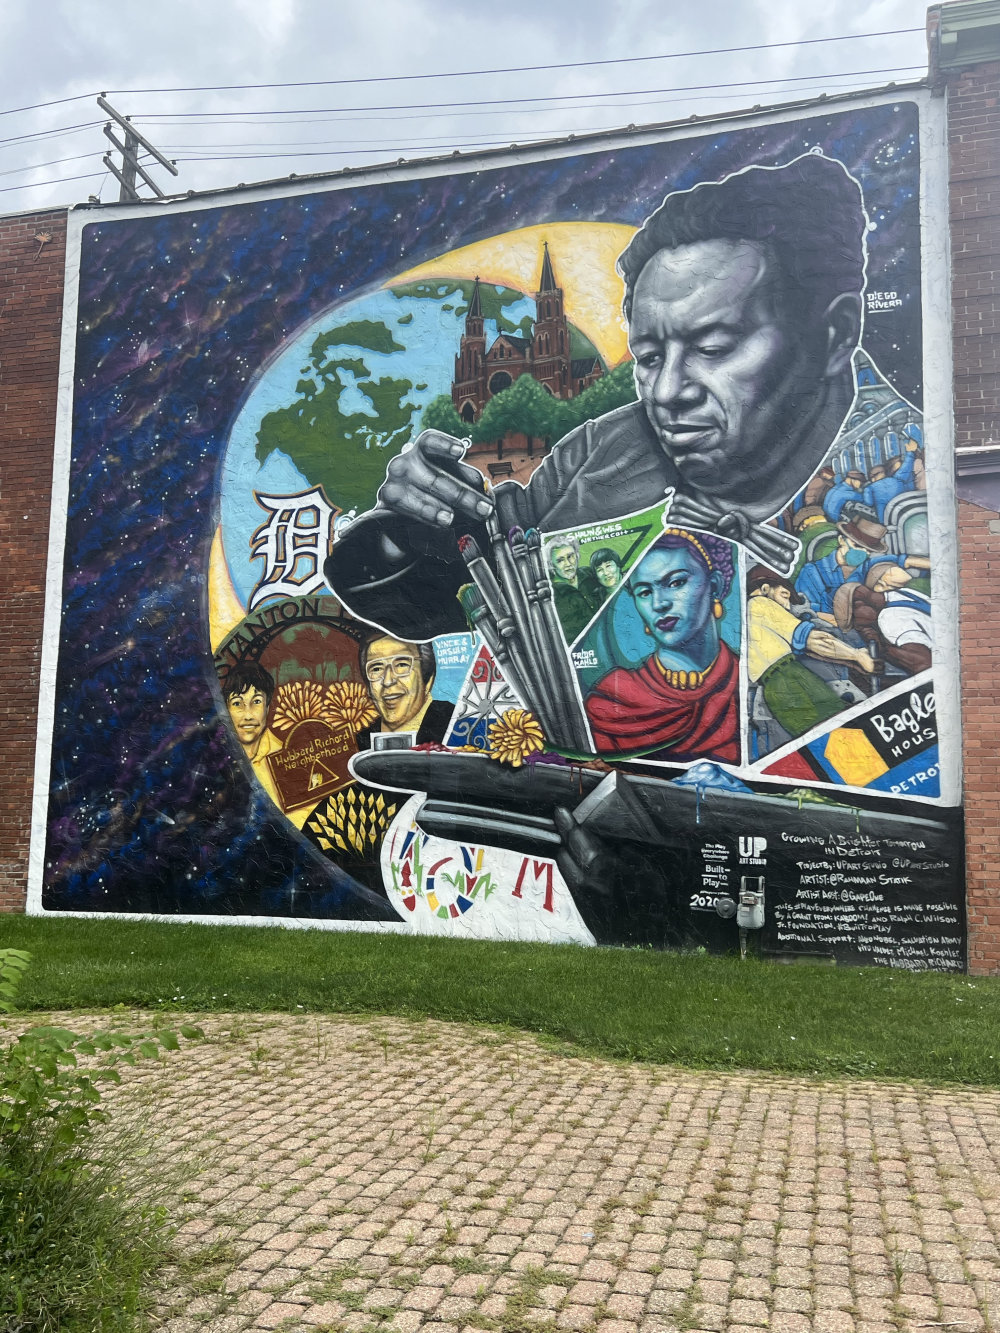 mural in Detroit by artist Rahmaan Statik.